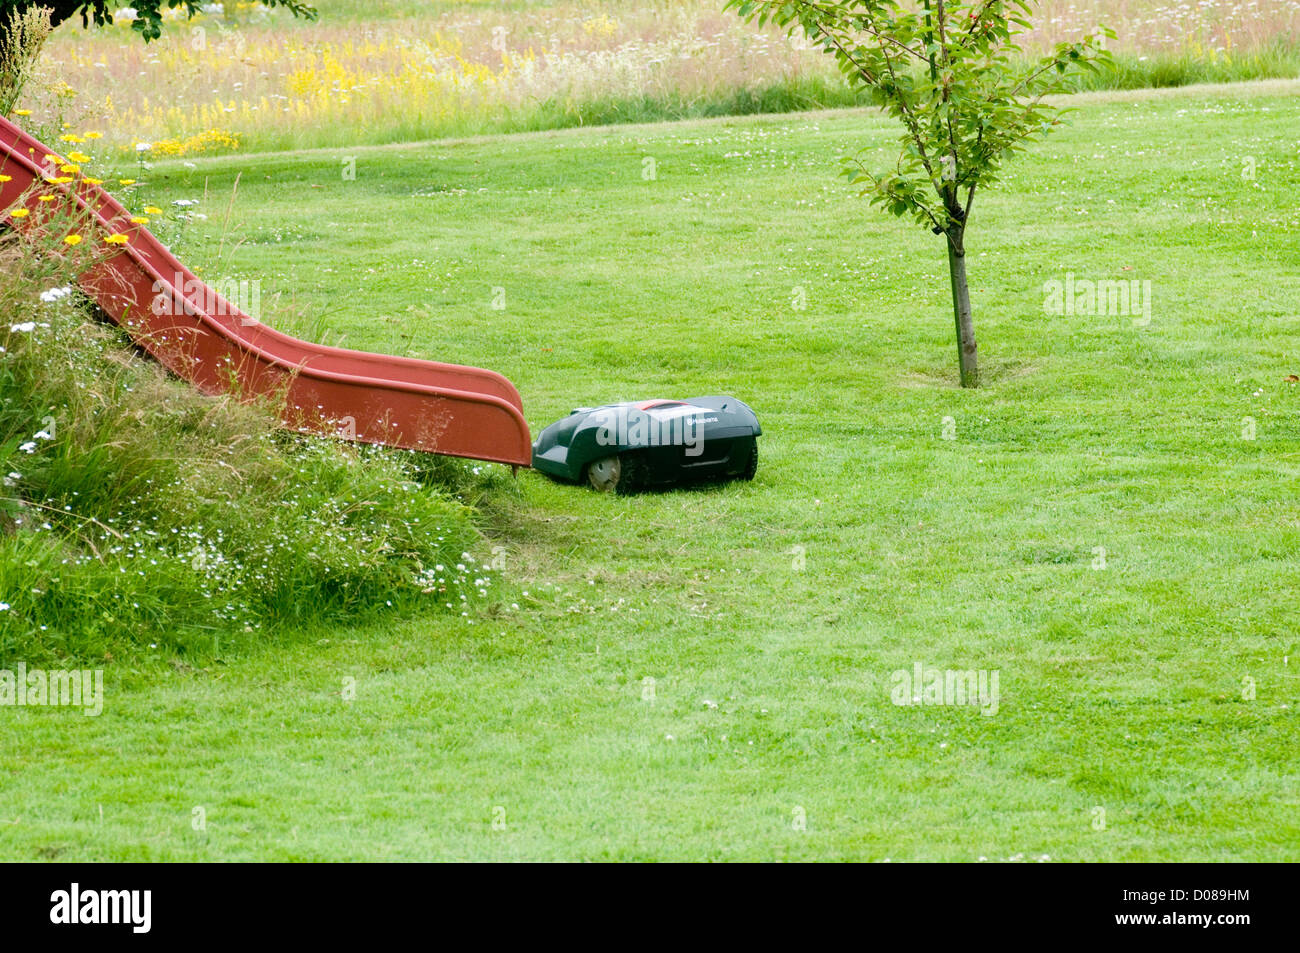 husqvarna robotic robot mower mowers grass cutter cutting the garden hi tech Stock Photo